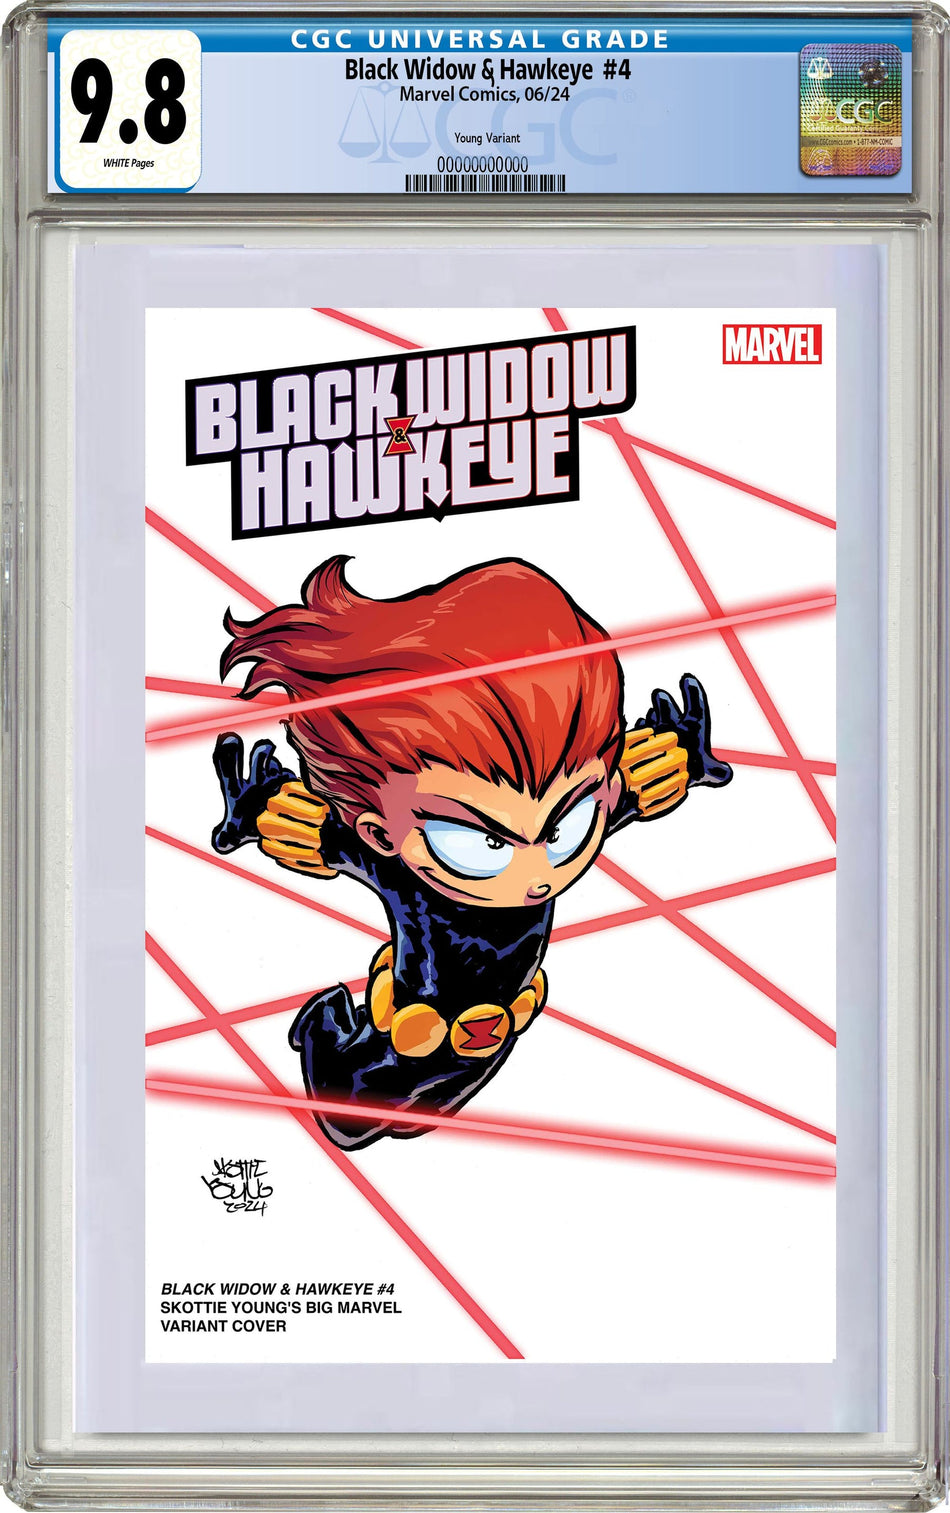 CGC 9.8 Black Widow & Hawkeye #4 Skottie Young's Big Marvel Variant PRE-ORDER